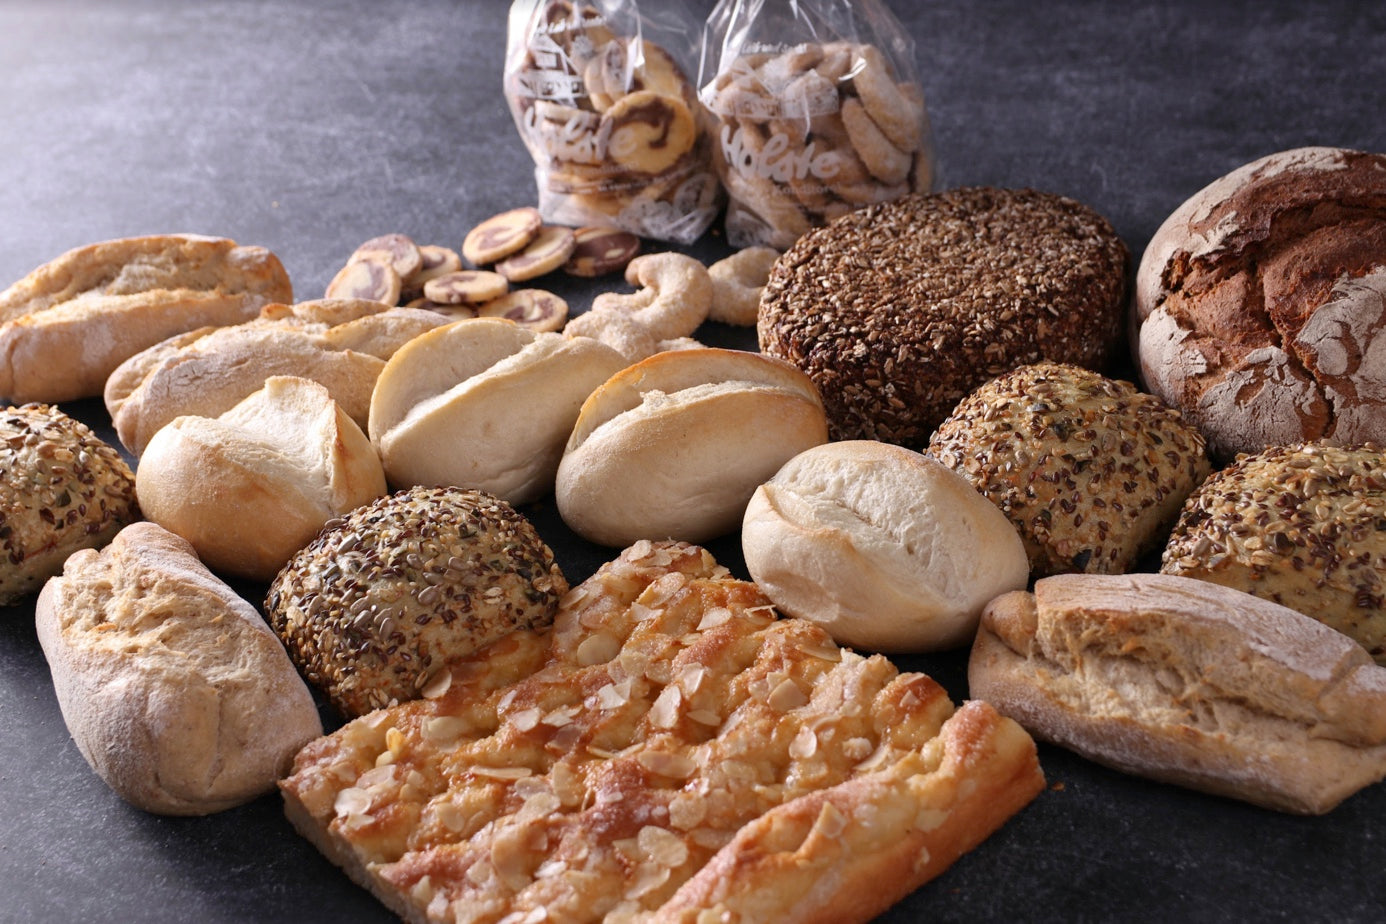 Wochenglück XL: Butterkuchen, Roggen-Vollkornbrot, Roggenmischbrot, 12 gemischte Brötchen, Kekse